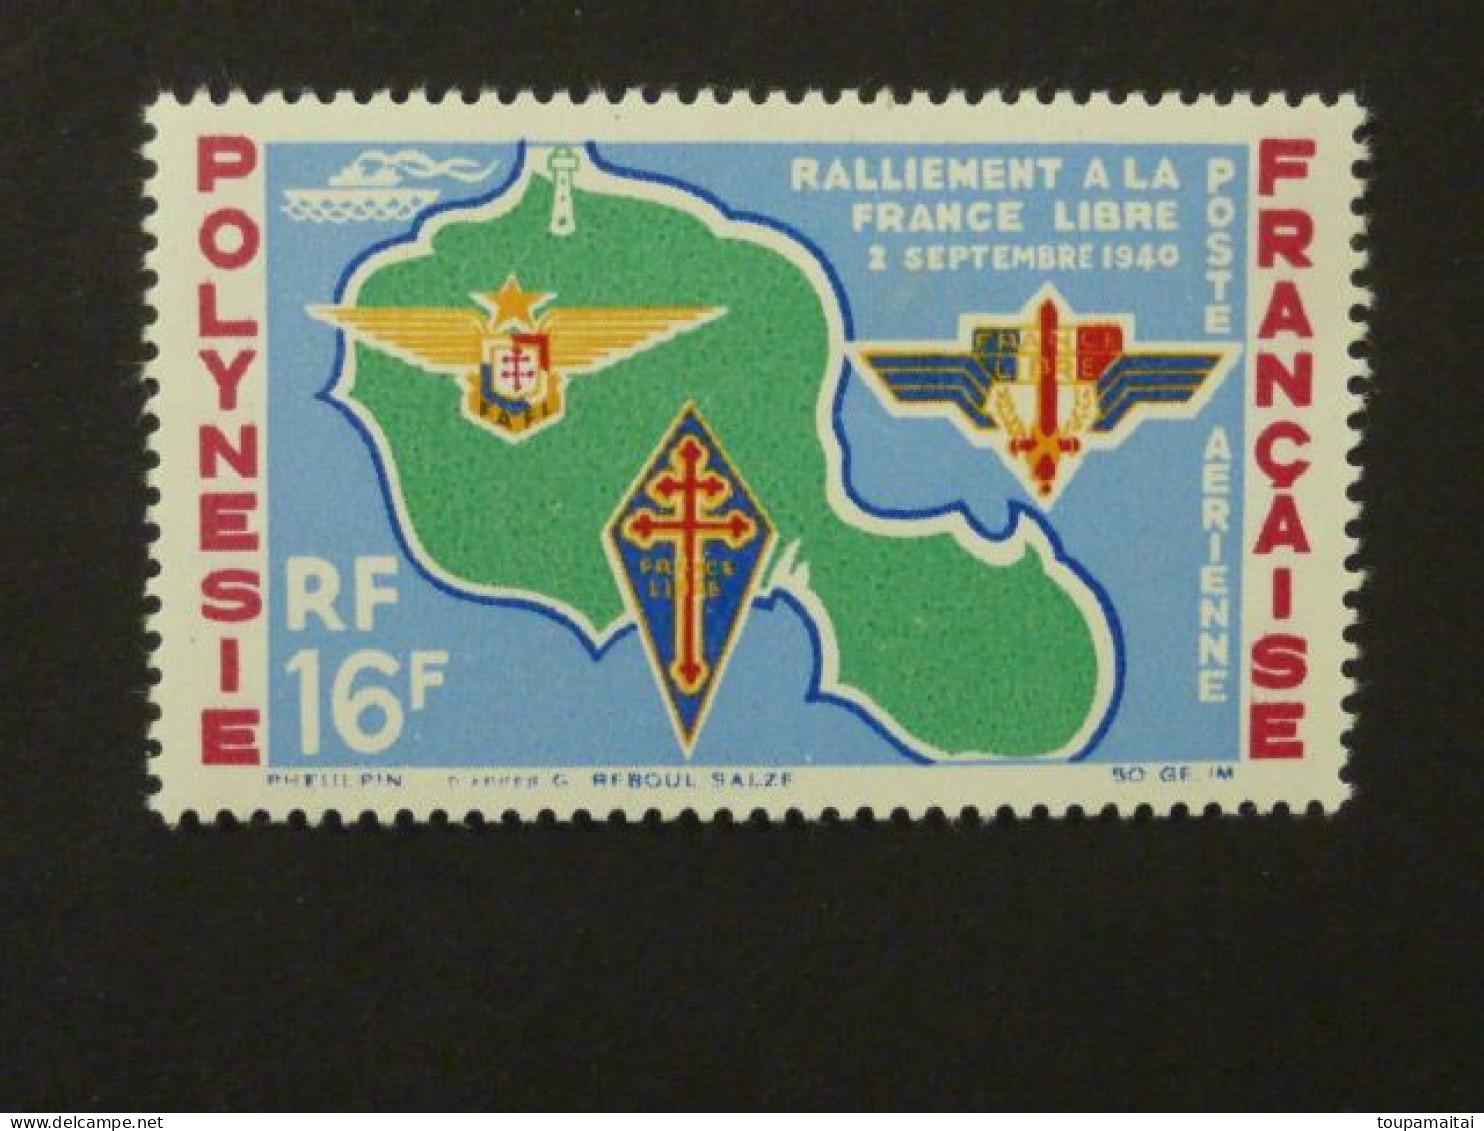 POLYNESIE FRANCAISE, Poste Aérienne, Année 1964, YT N° 8 Neuf MH, Ralliement à La France Libre Le 2 Septembre 1940 - Neufs